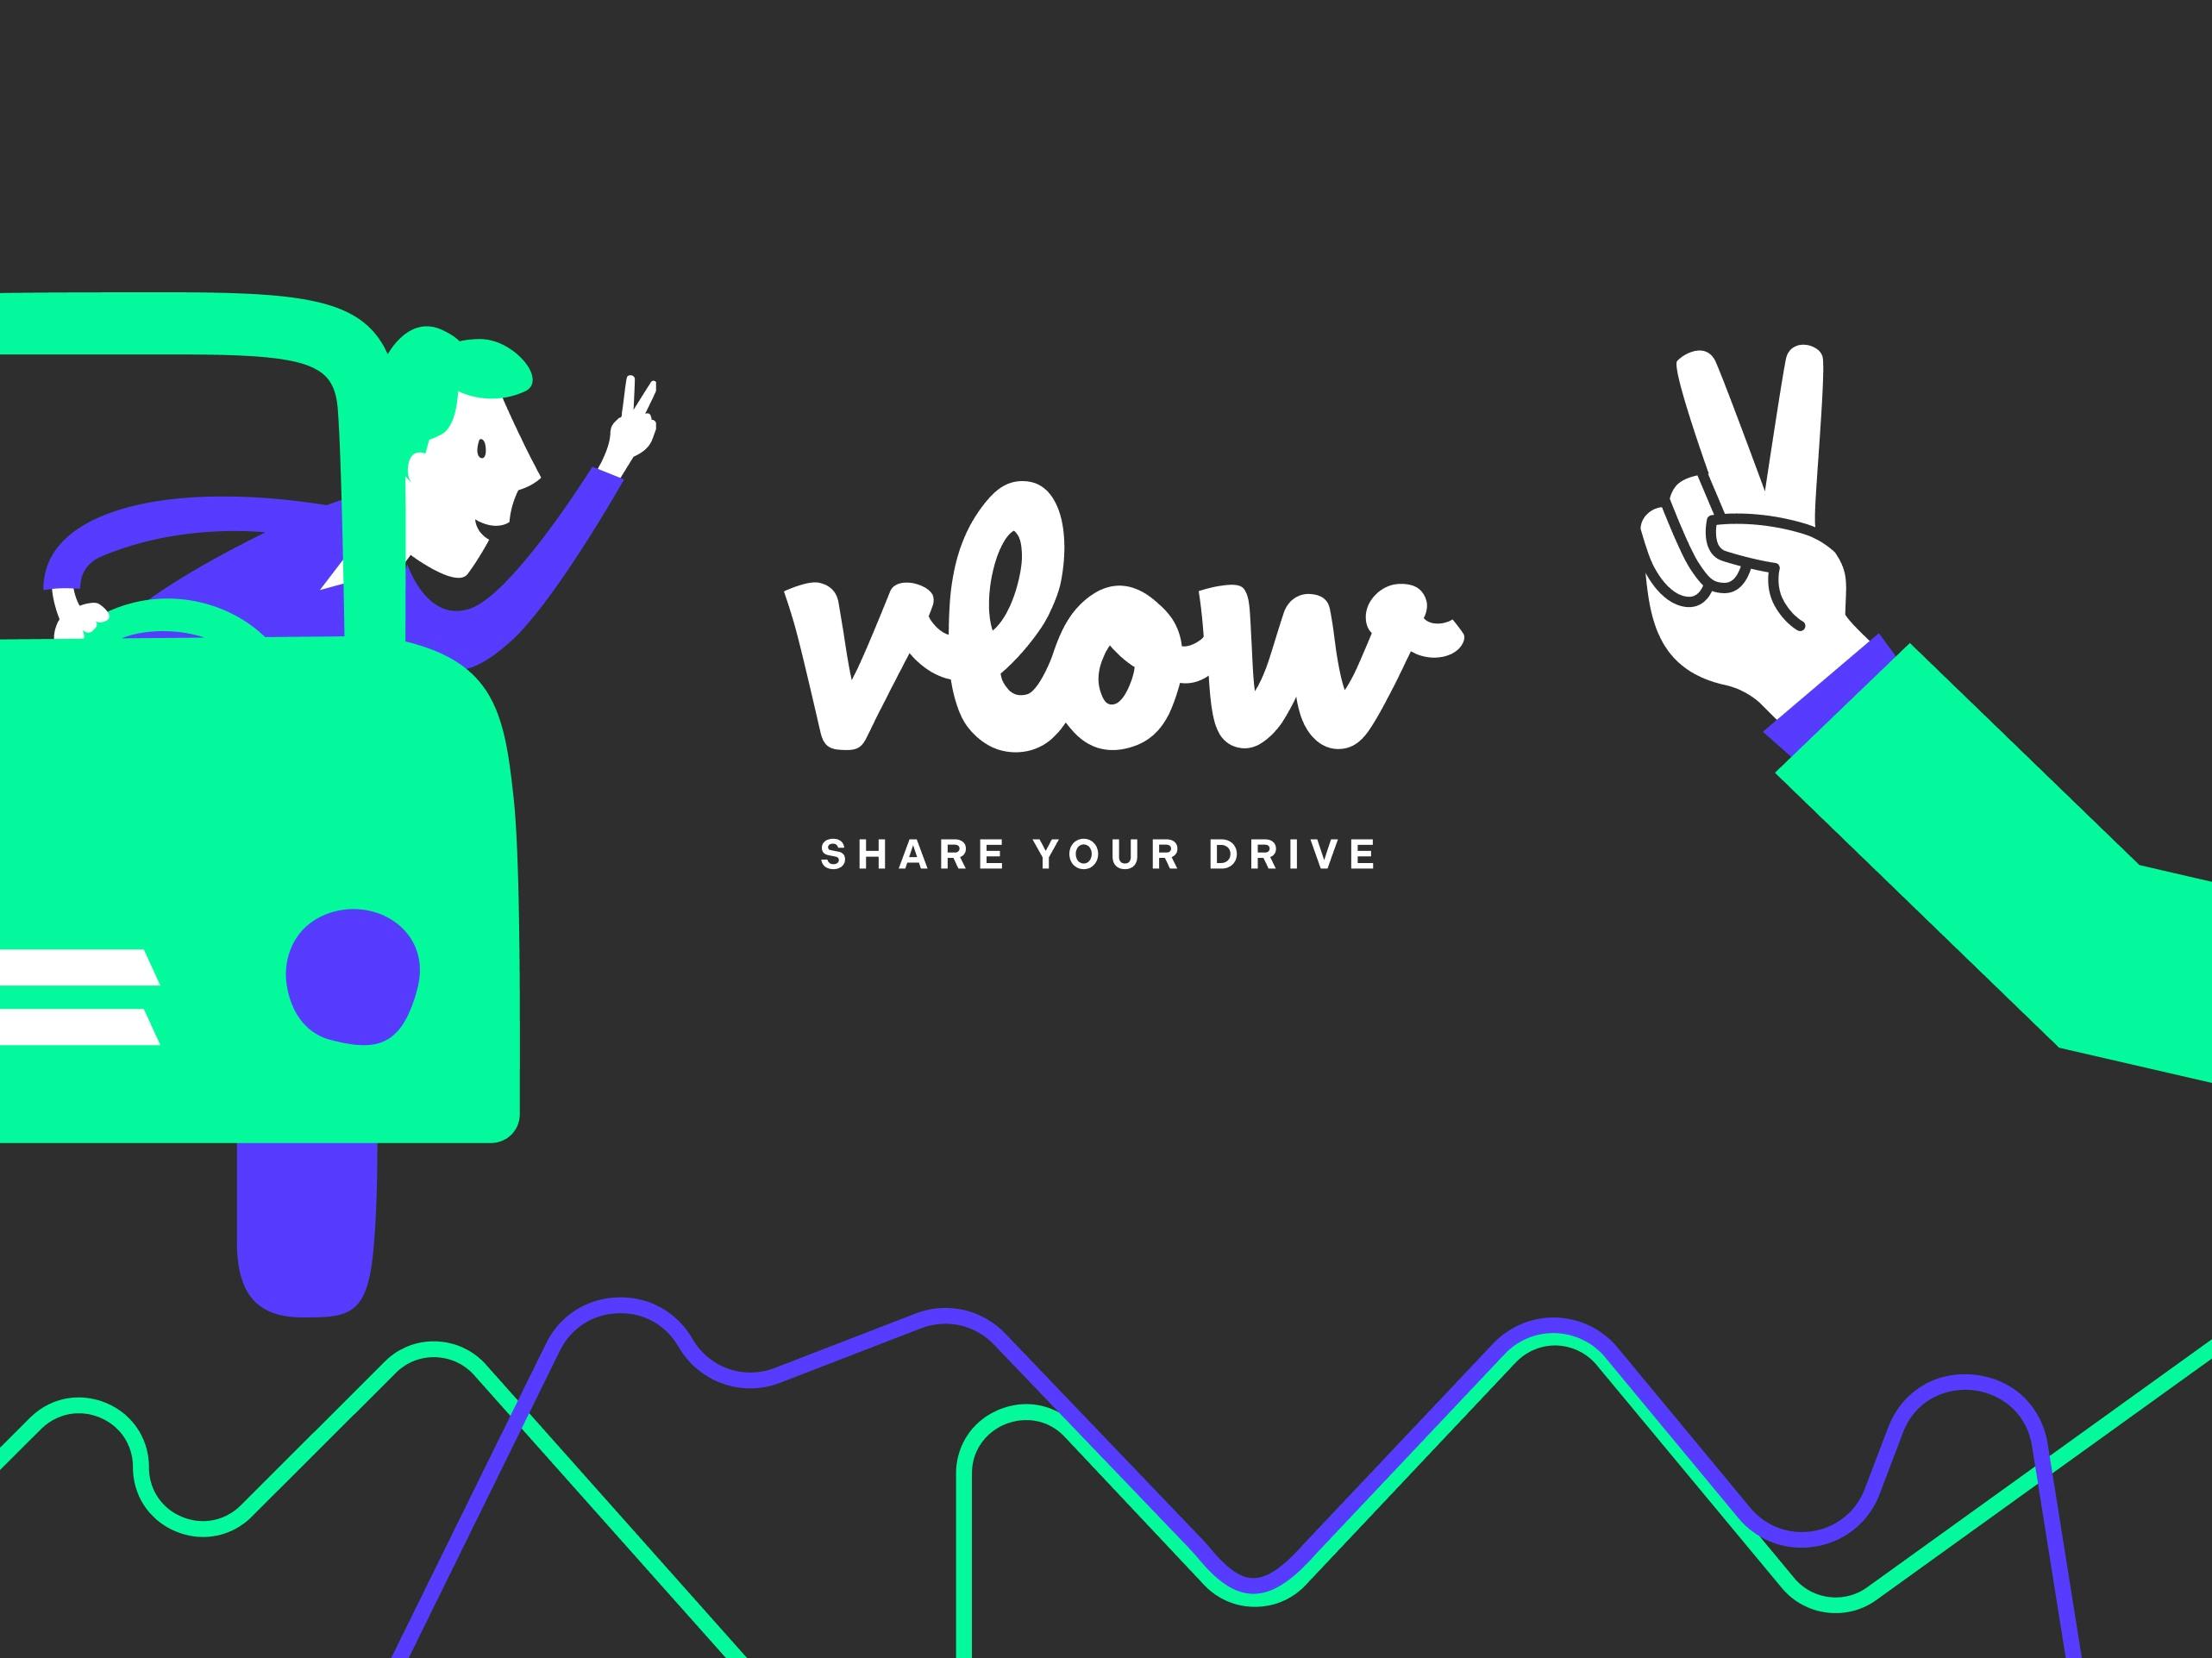 Illustration eines Autofahrers in einem Auto und einer Hand, beide zeigen das Symbol v für vlow © good matters